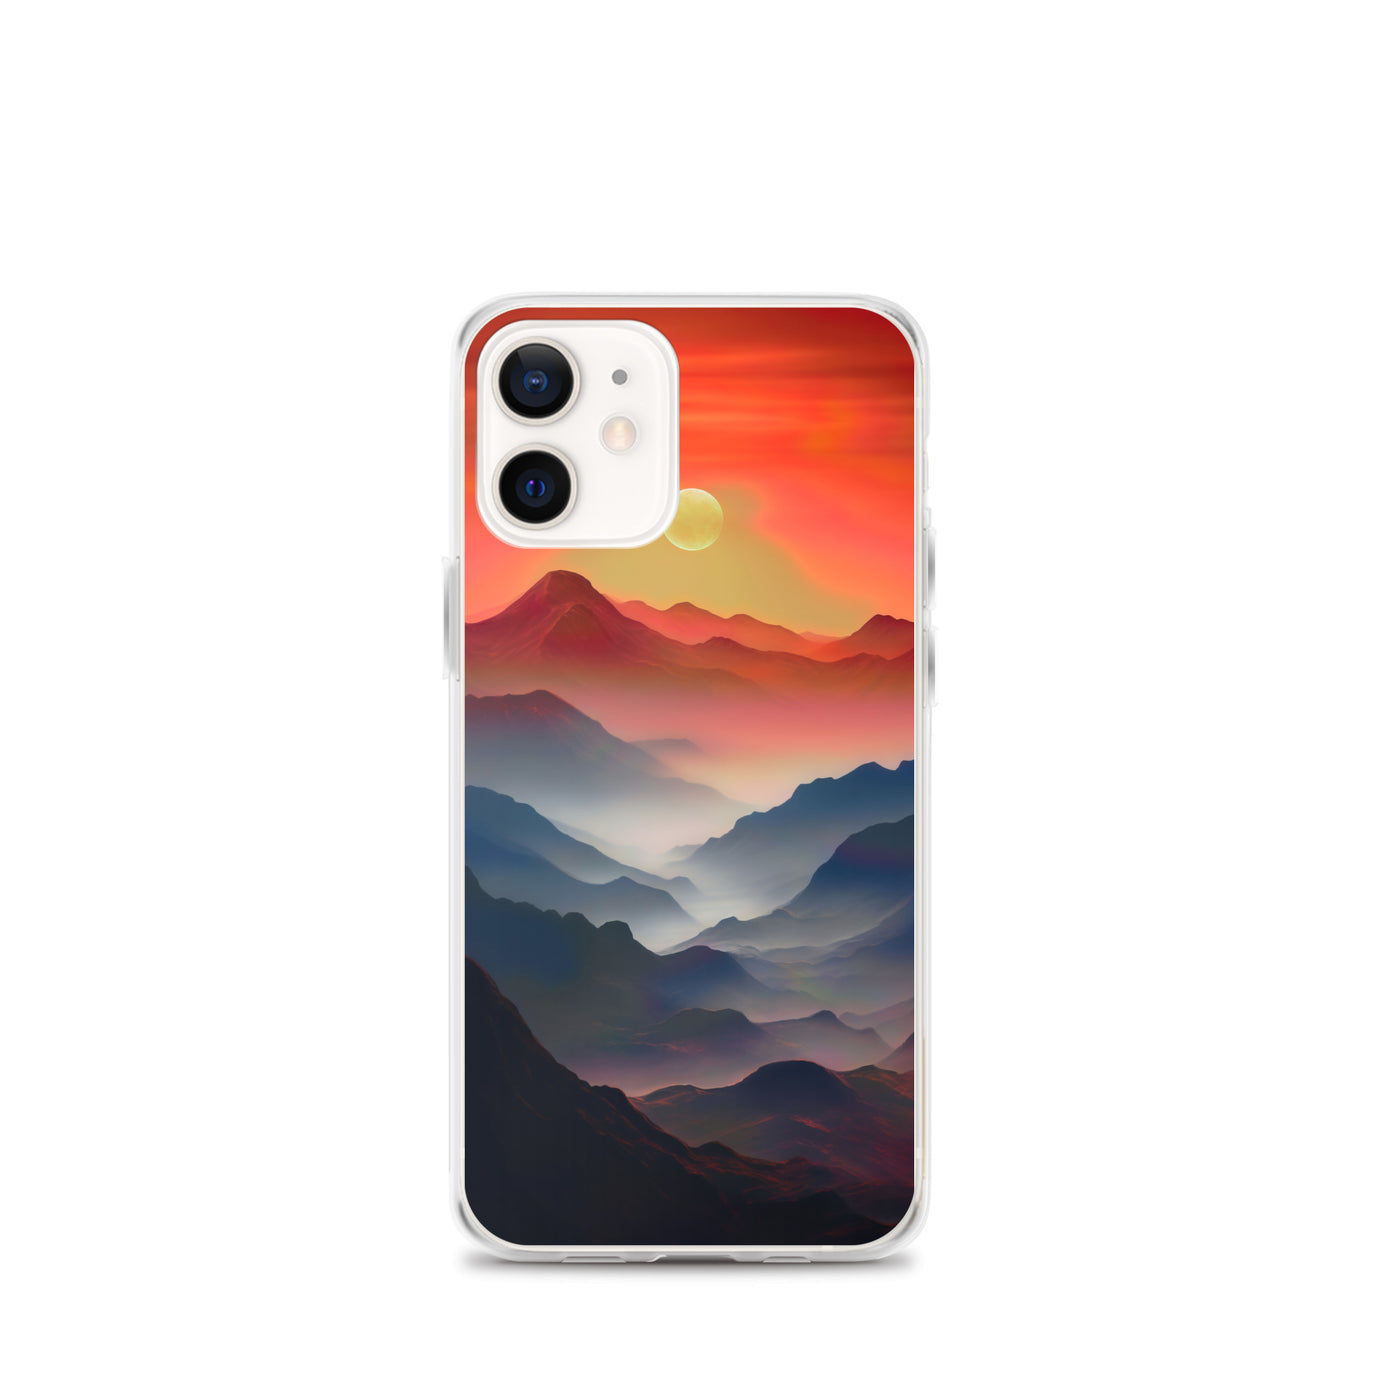 Sonnteruntergang, Gebirge und Nebel - Landschaftsmalerei - iPhone Schutzhülle (durchsichtig) berge xxx iPhone 12 mini